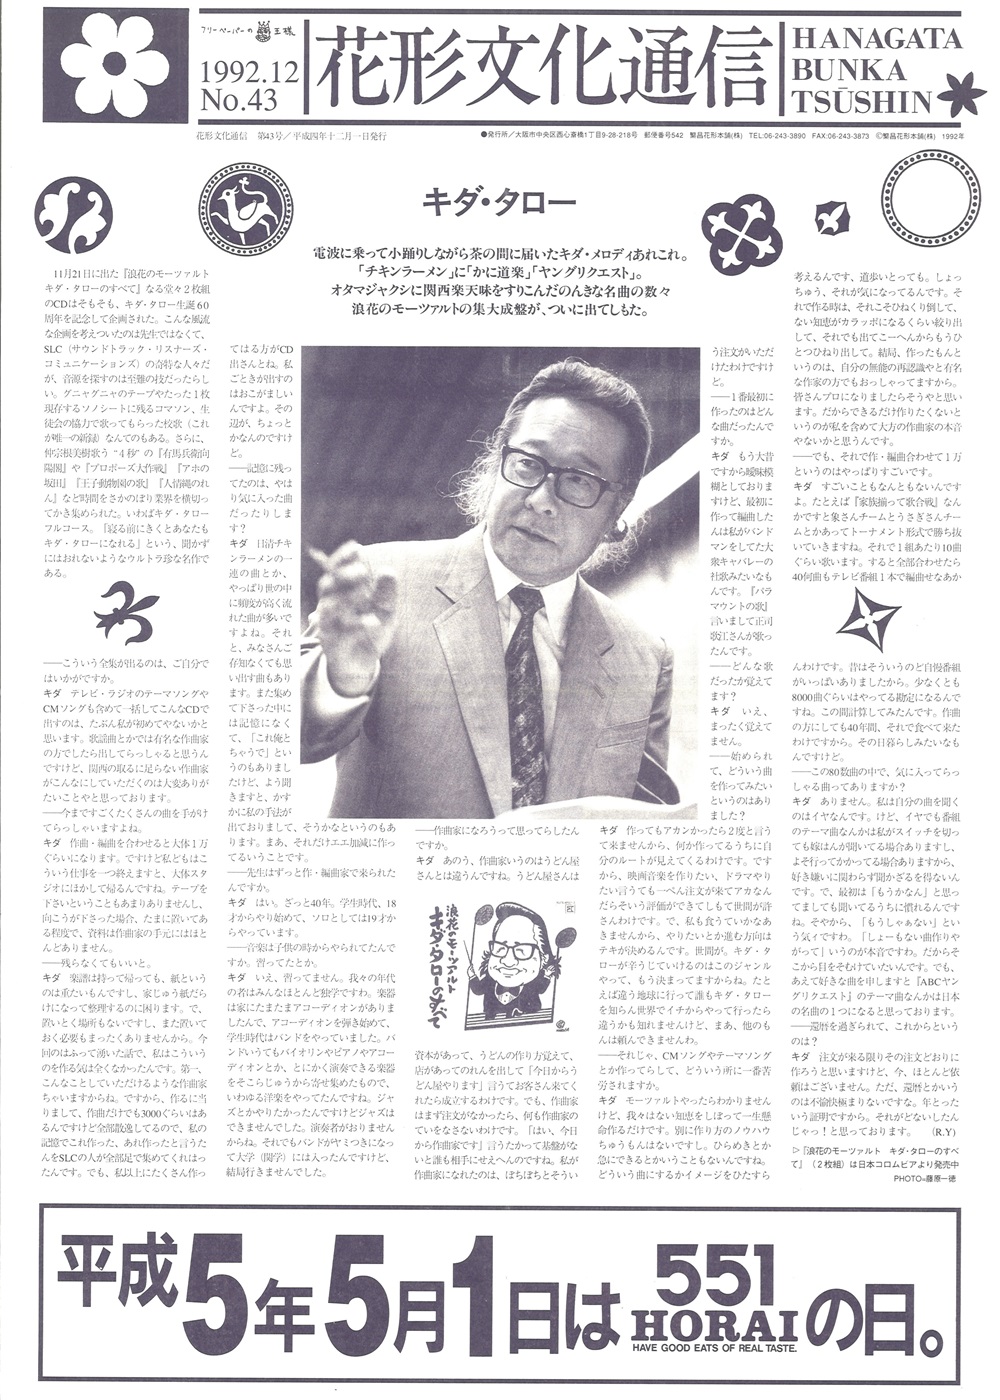 「花形文化通信」NO.43／1992年12月1日／繁昌花形本舗株式会社 発行